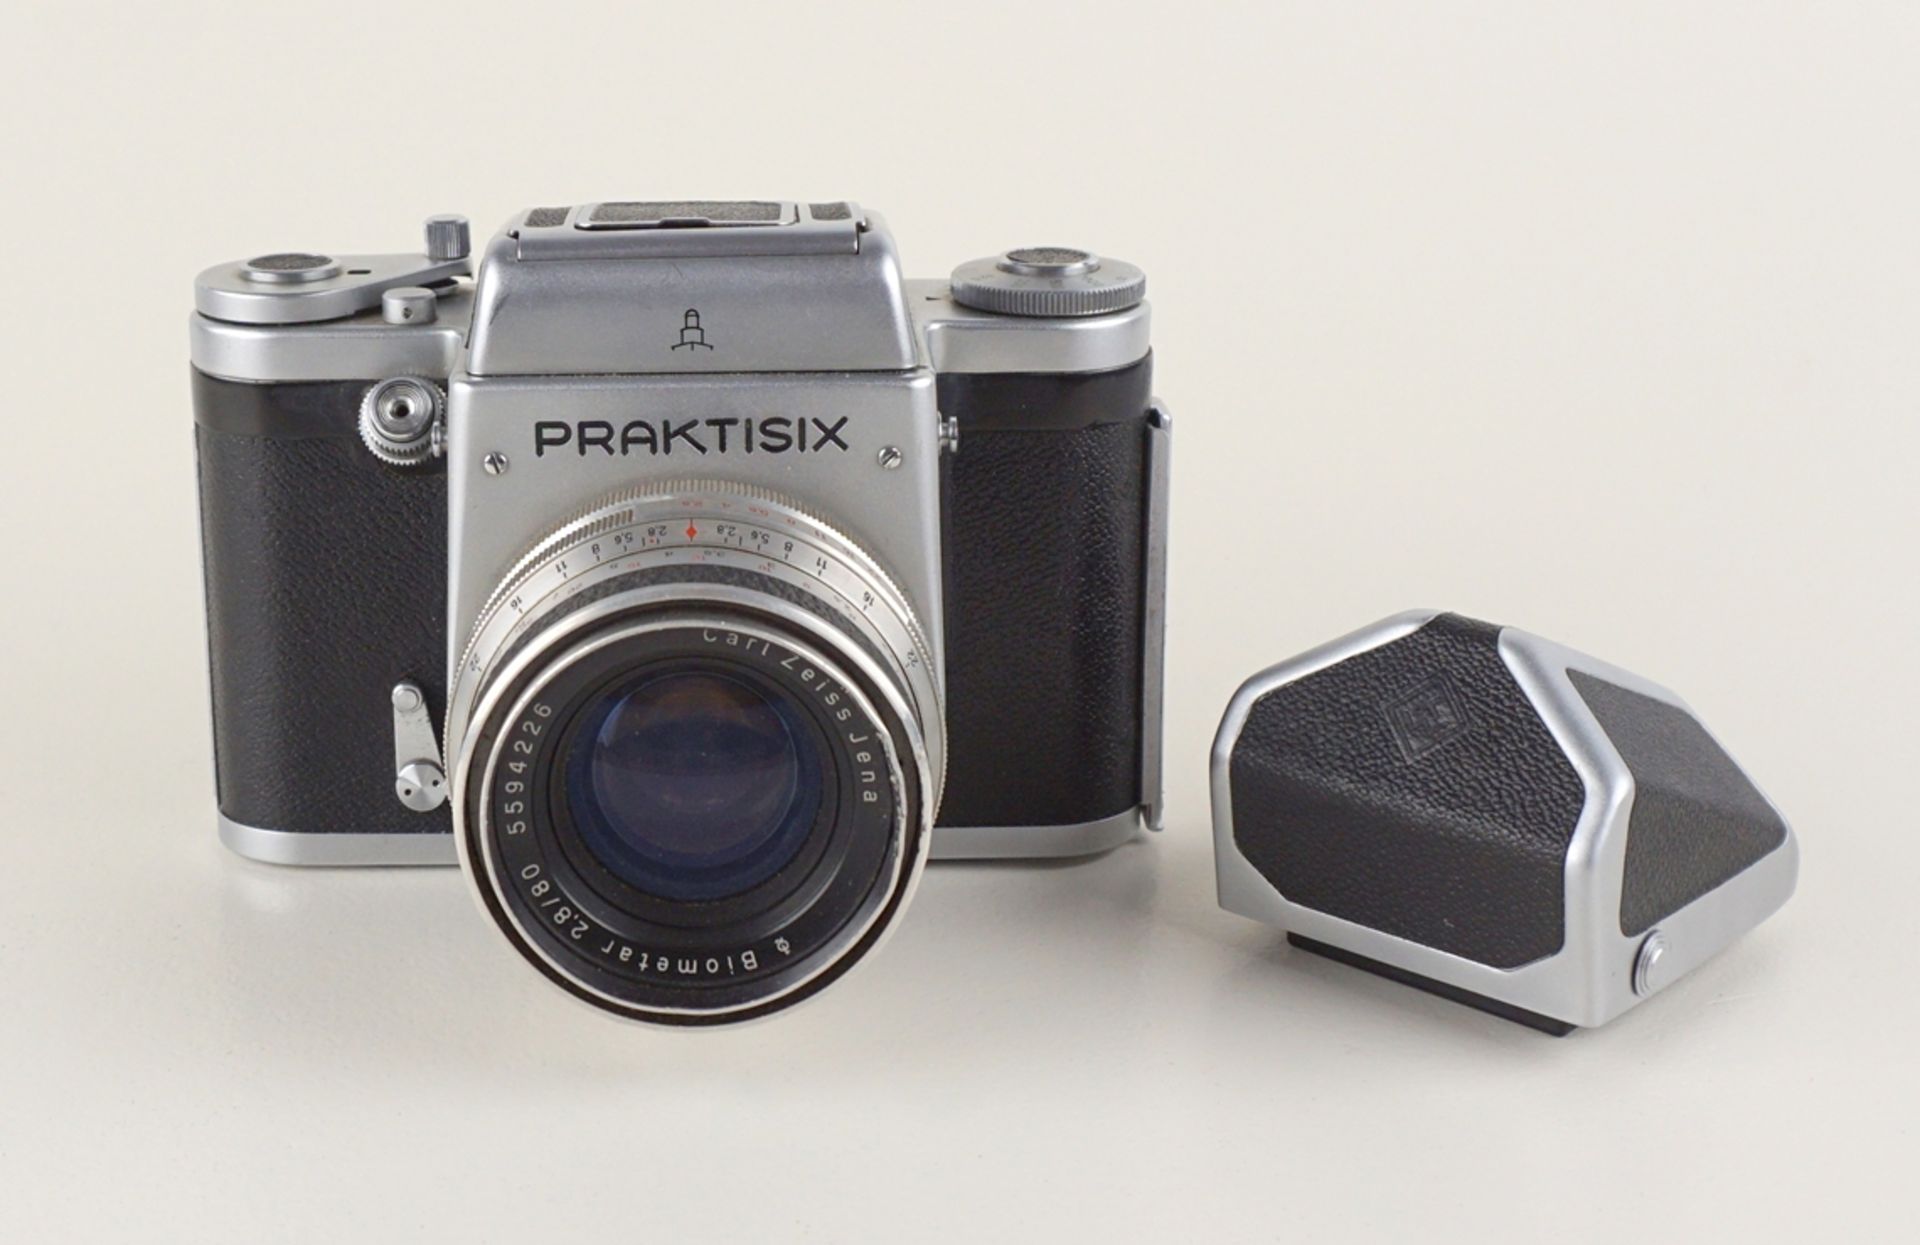 6x6 Mittelformatkamera Praktisix mit Objektiv, Prismensucher und Grünfilter